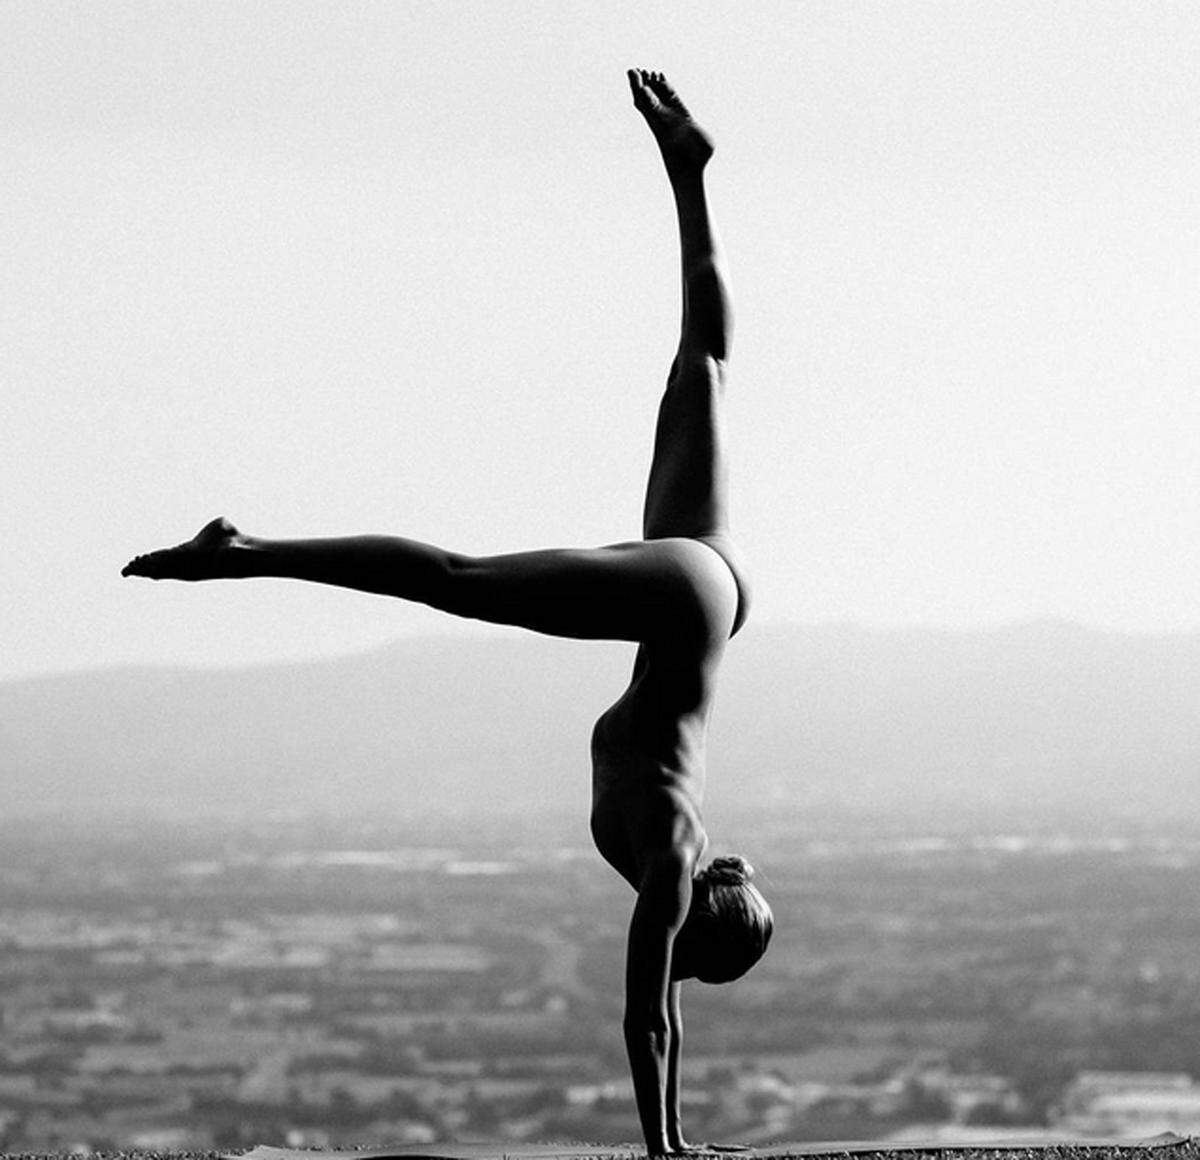 Der Instagram-Account der anonymen Yogini besticht nicht nur durch die als Akt fotografierten Yogaposen, sondern auch durch Tipps für die Yogapraxis sowie Lebensweisheiten.  Instagram/@nude_yogagirl  